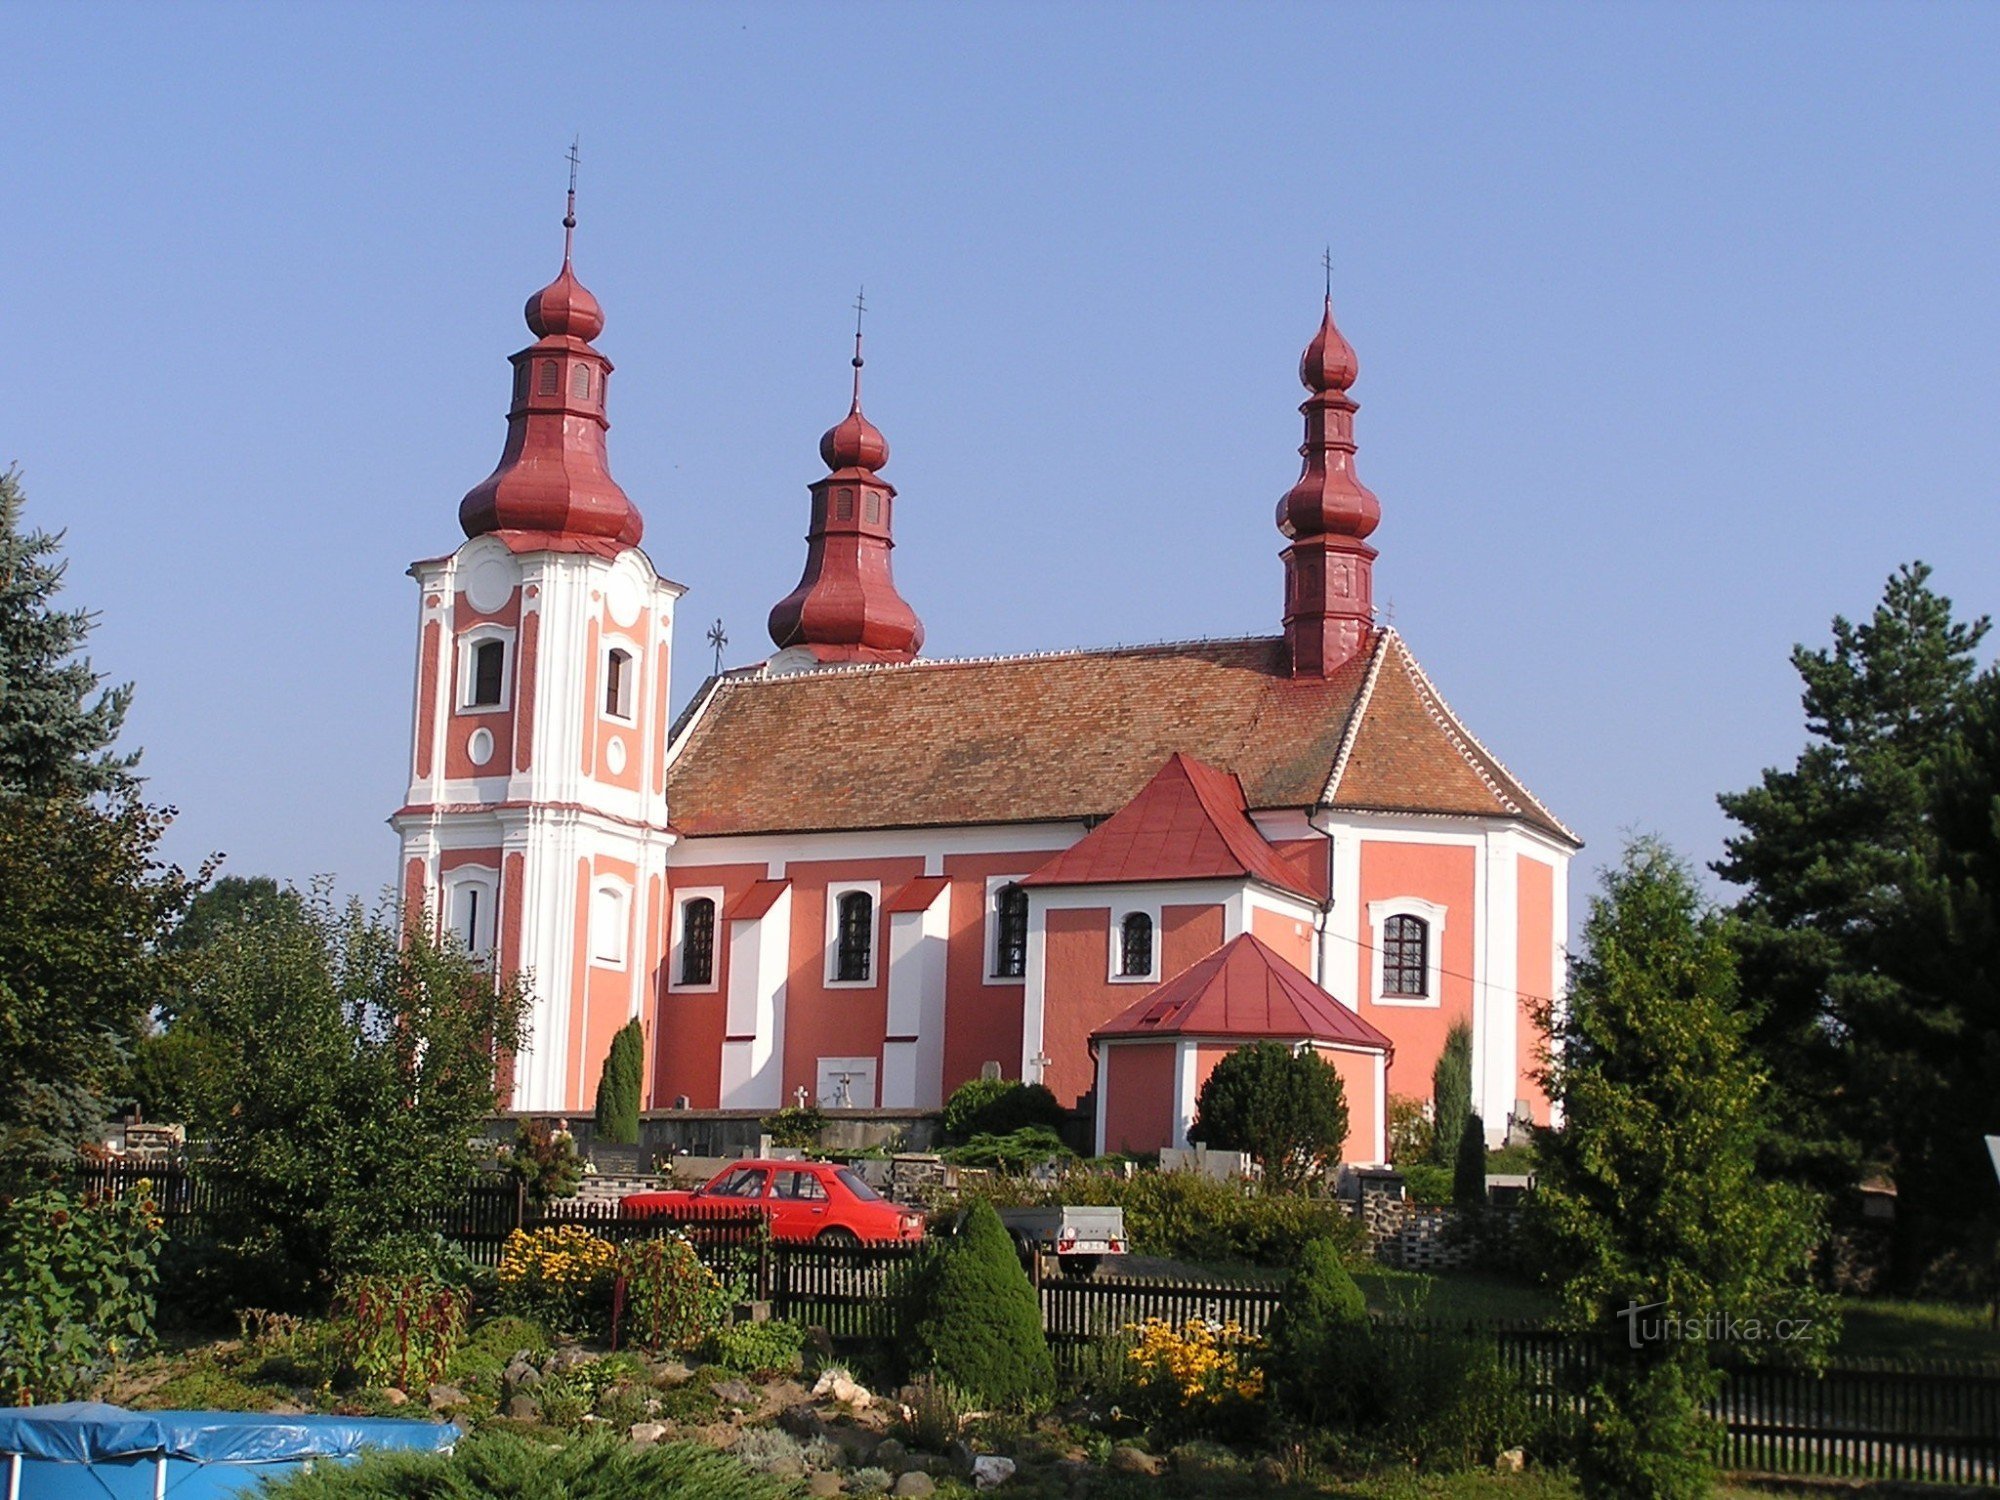 Kościół św. Bartłomieja na Rozsochach - 3.8.2003 sierpnia XNUMX